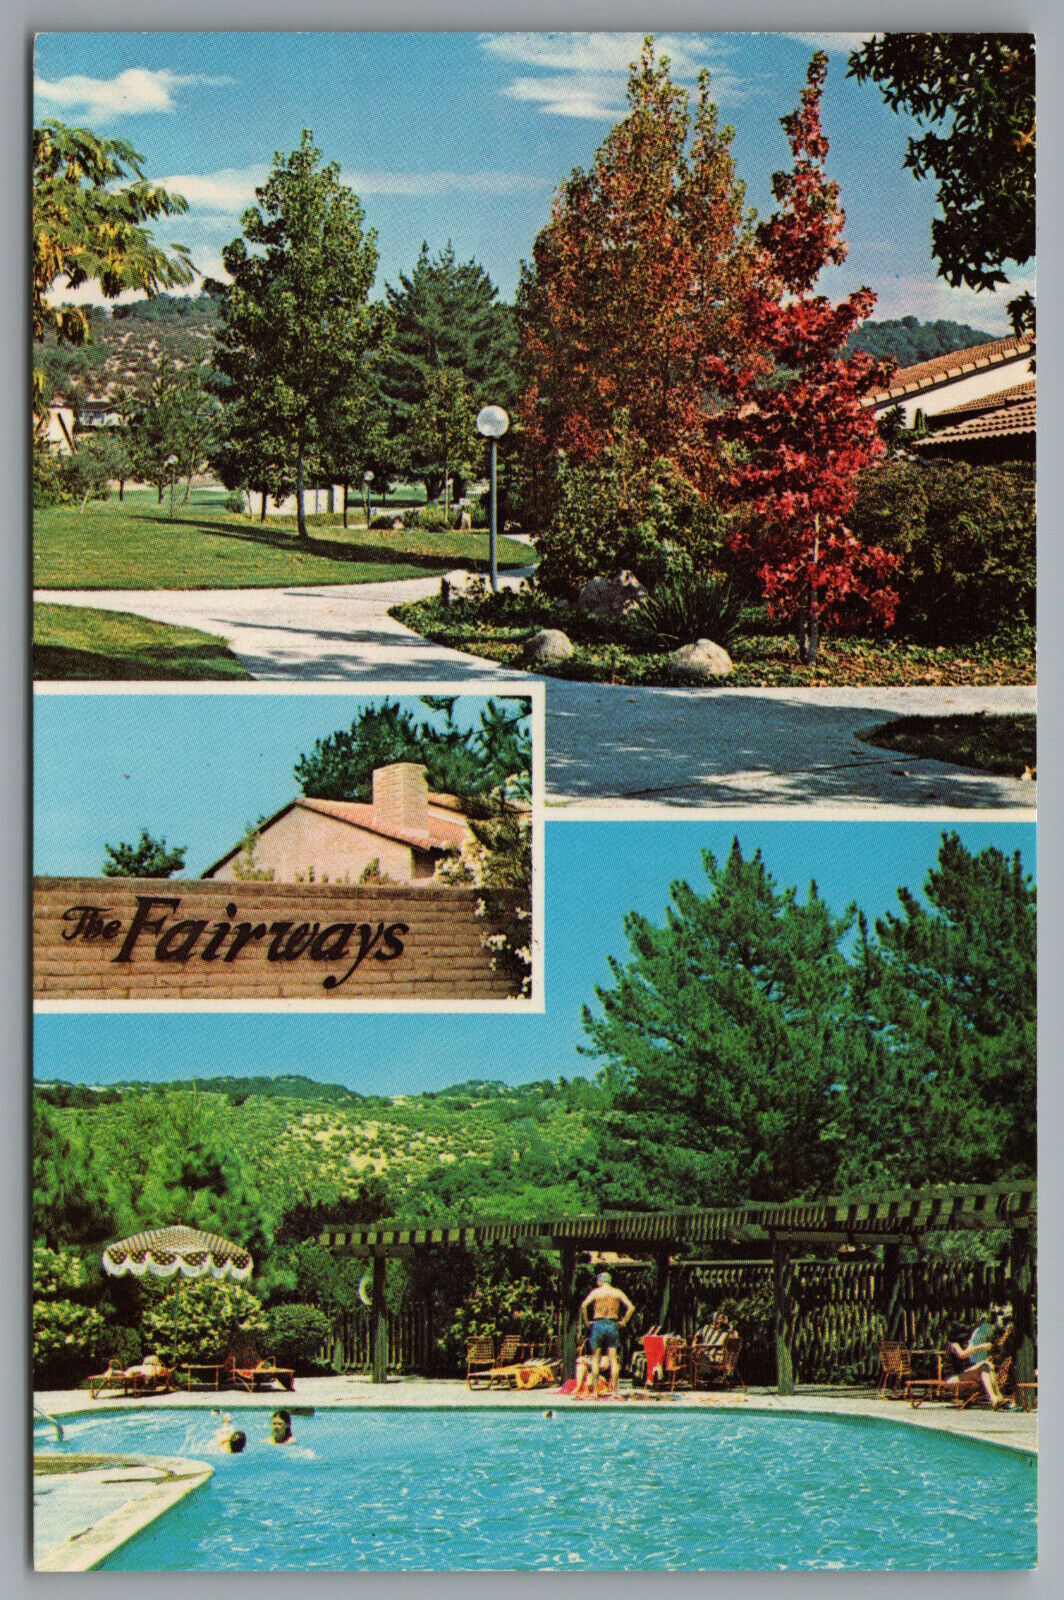 Napa CA The Fairways at Silverado Condominiums Golf Country Club c1970s Postcard